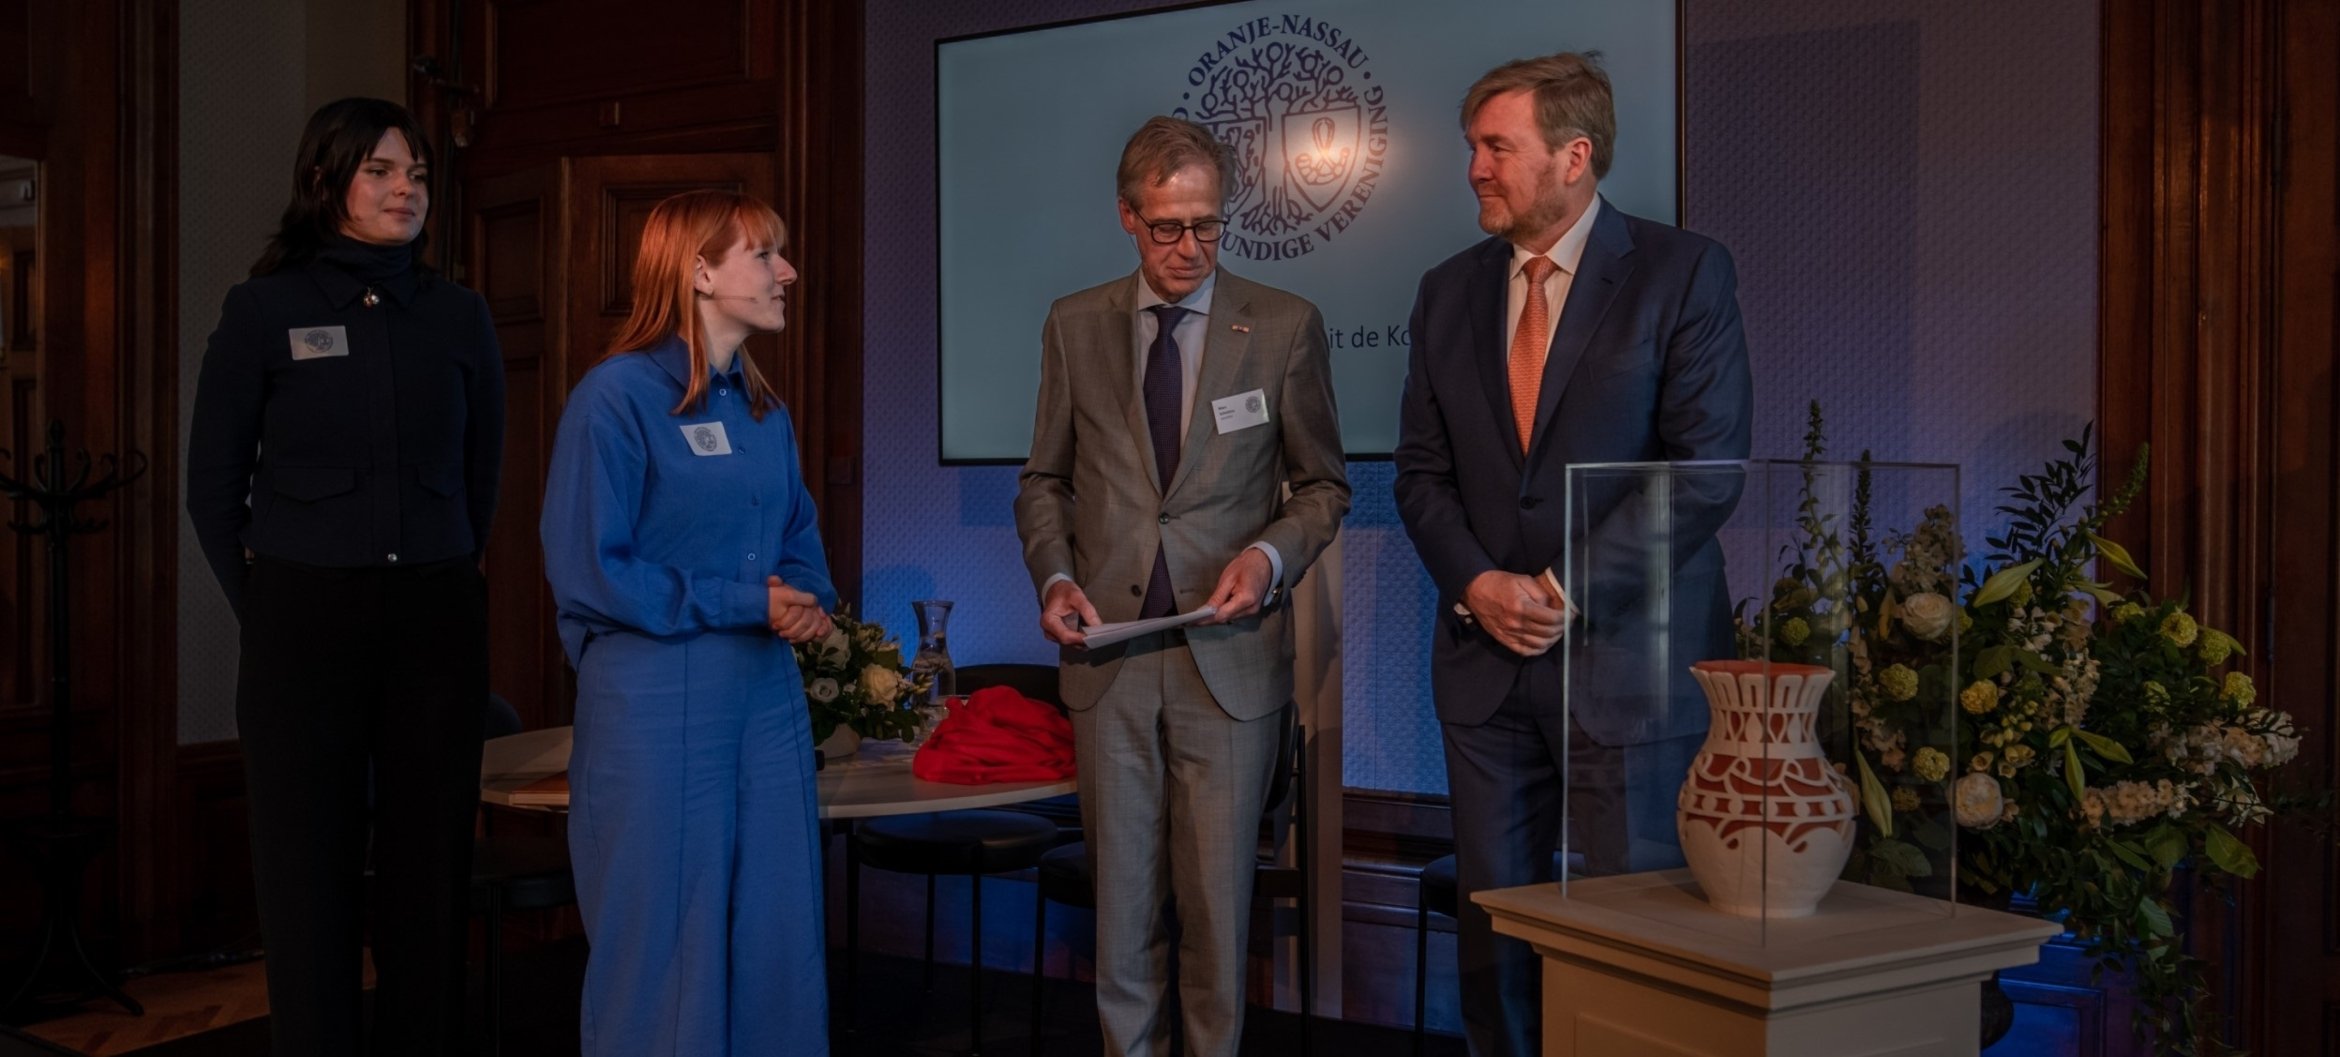 Eline de Boer en Irene van Dijke overhandigen het geschenk aan Koning Willem-Alexander, foto door Theo van Woerden